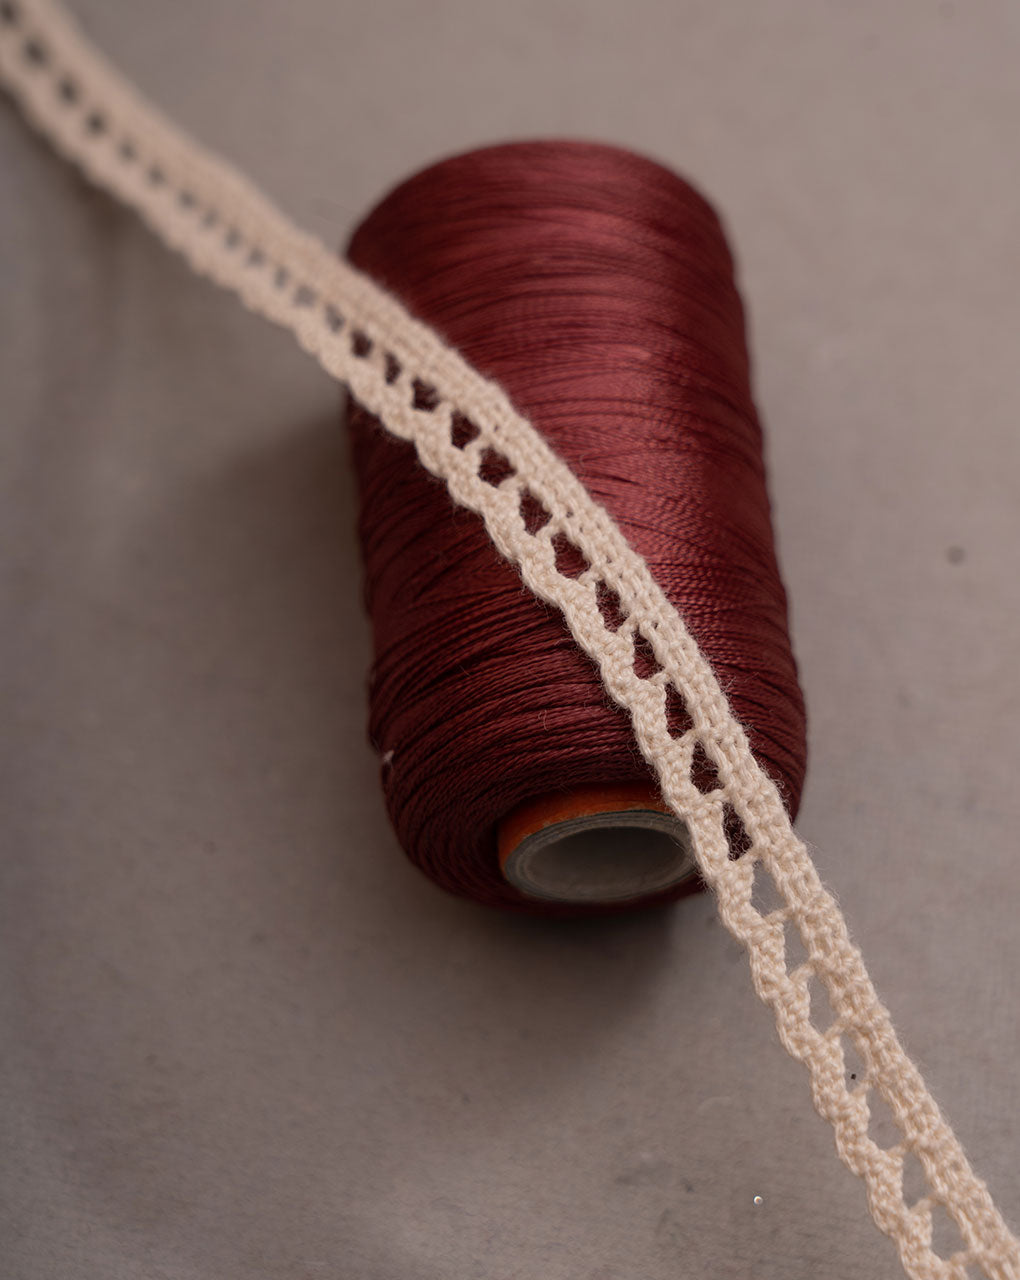 Dyeable Crochet Cotton Lace - Fabriclore.com